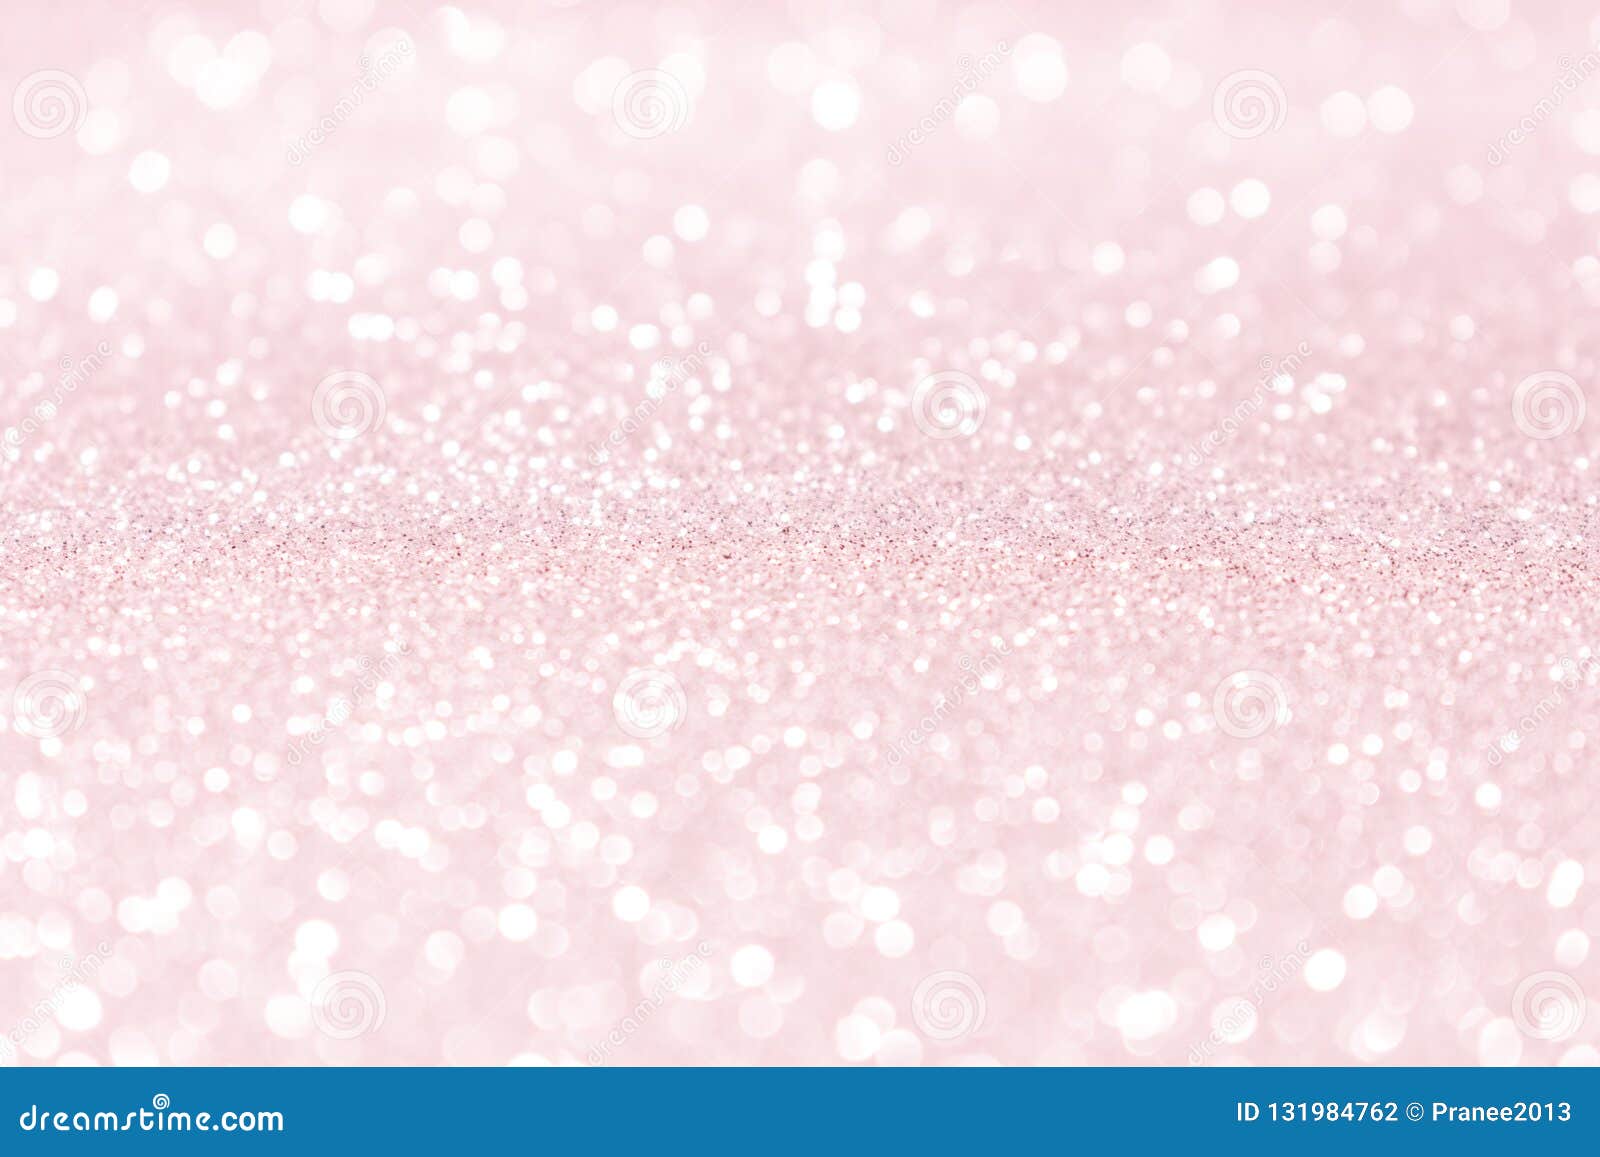 Hình ảnh nền hồng tuyết phấn và hoa hồng lấp lánh là một bộ sưu tập đáng yêu và tinh tế để làm nền cho thiết bị của bạn. Những họa tiết hoa hồng tươi sáng xen kẽ là tuyết lấp lánh tạo ra sự kết hợp ấn tượng và tràn đầy nữ tính. Hãy để cái nhìn của bạn trầm lắng và tận hưởng những giác quan đẹp nhất.